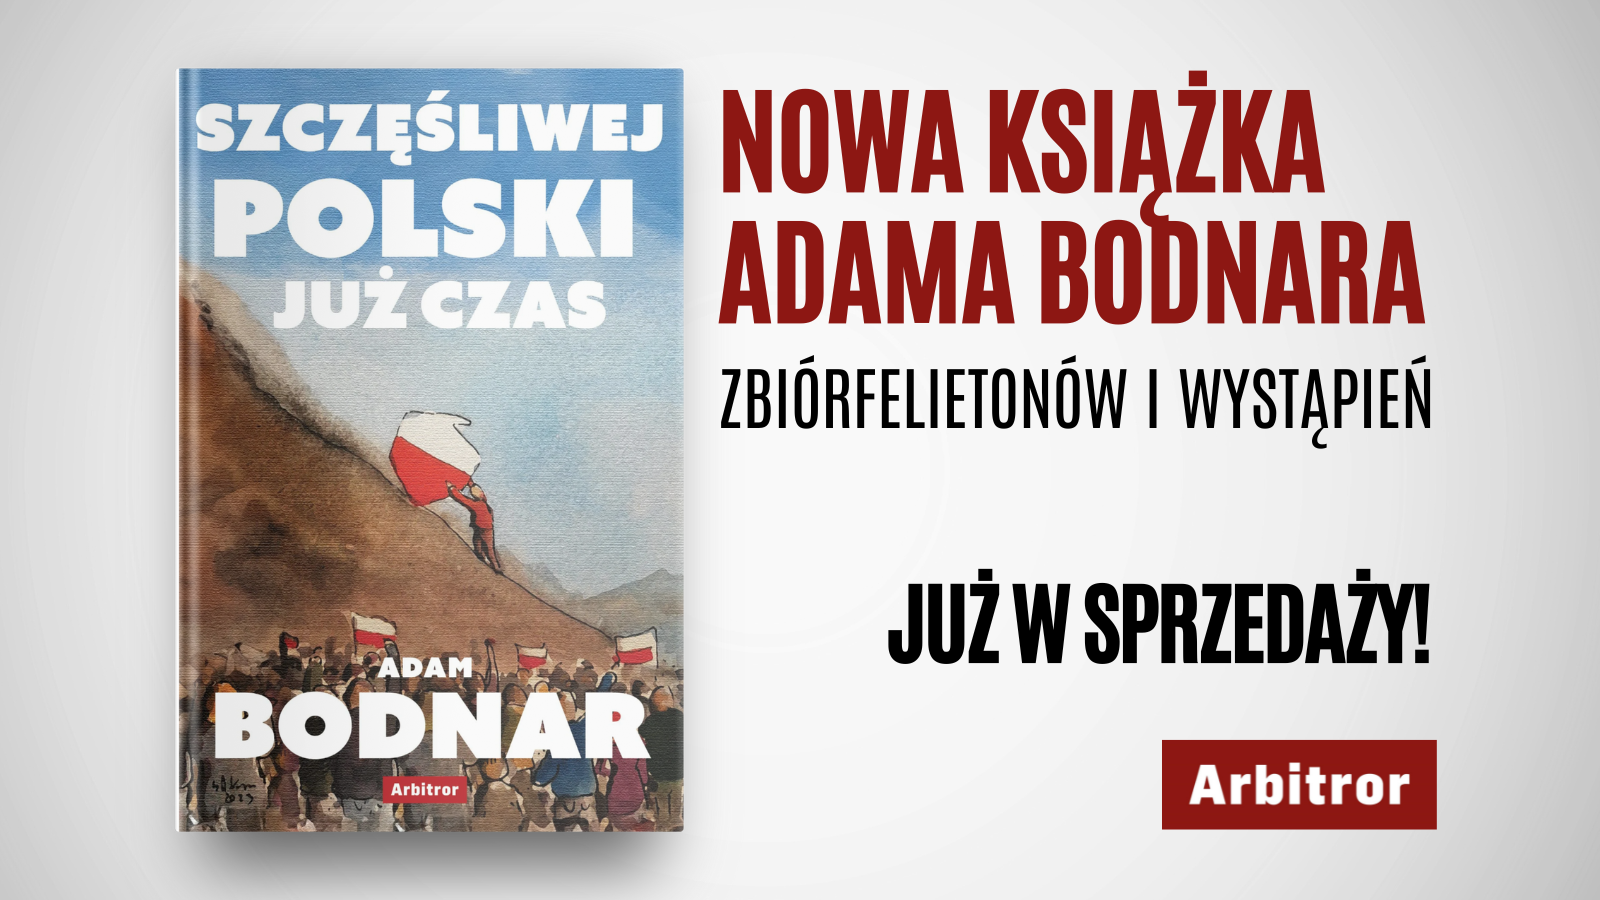 Okładka książki "Szczęśliwej Polski już czas"